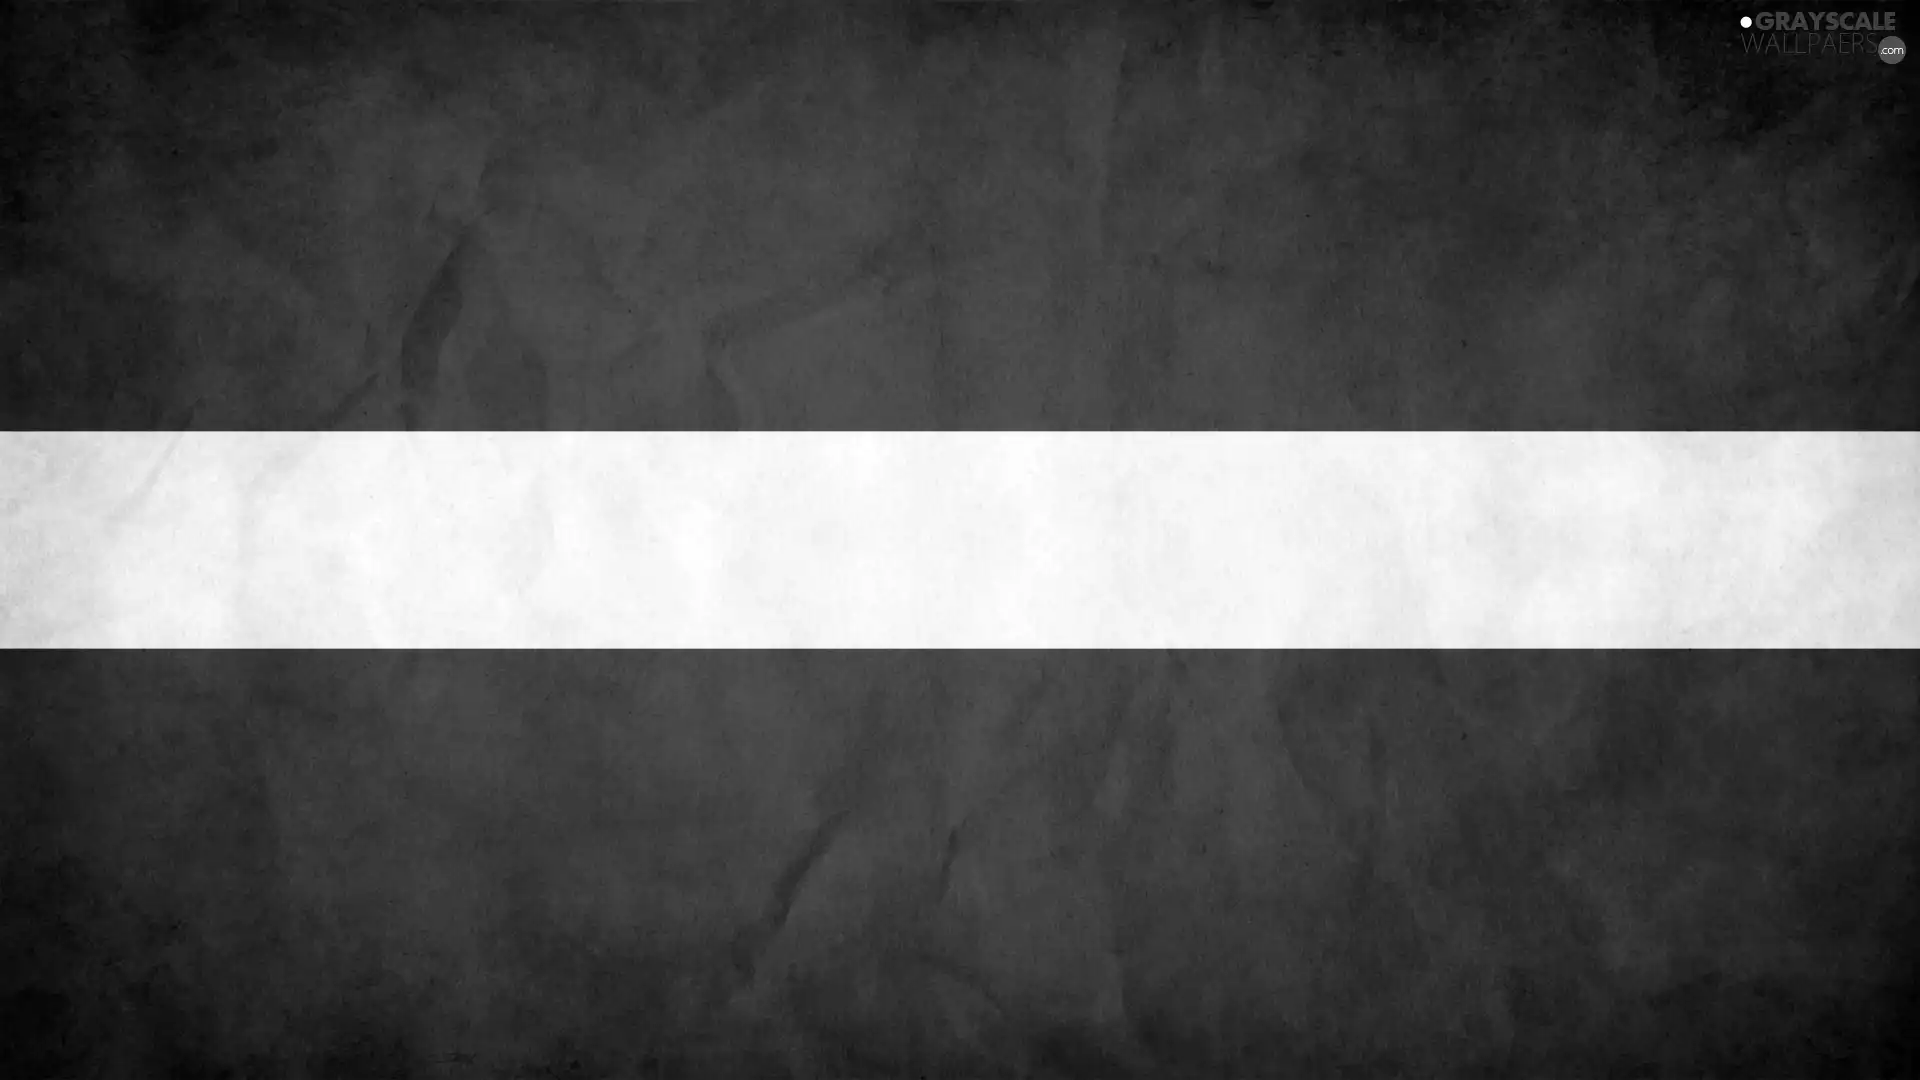 flag, Latvia